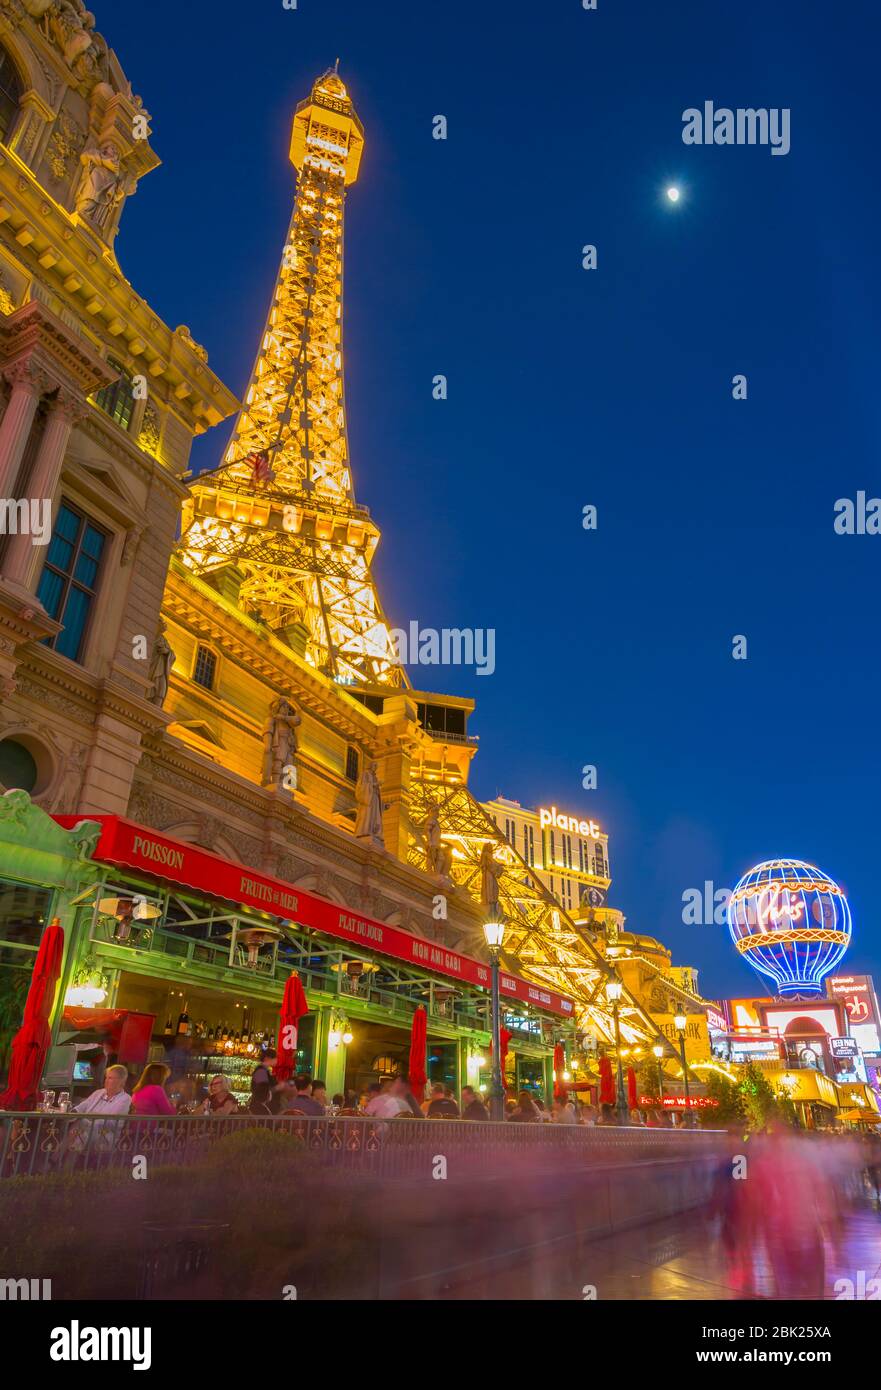 Paris Hotel with mini Eiffel Tower, The Strip (Las Vegas Boulevard), Las  Vegas, Nevada, USA, North America Stock Photo - Alamy